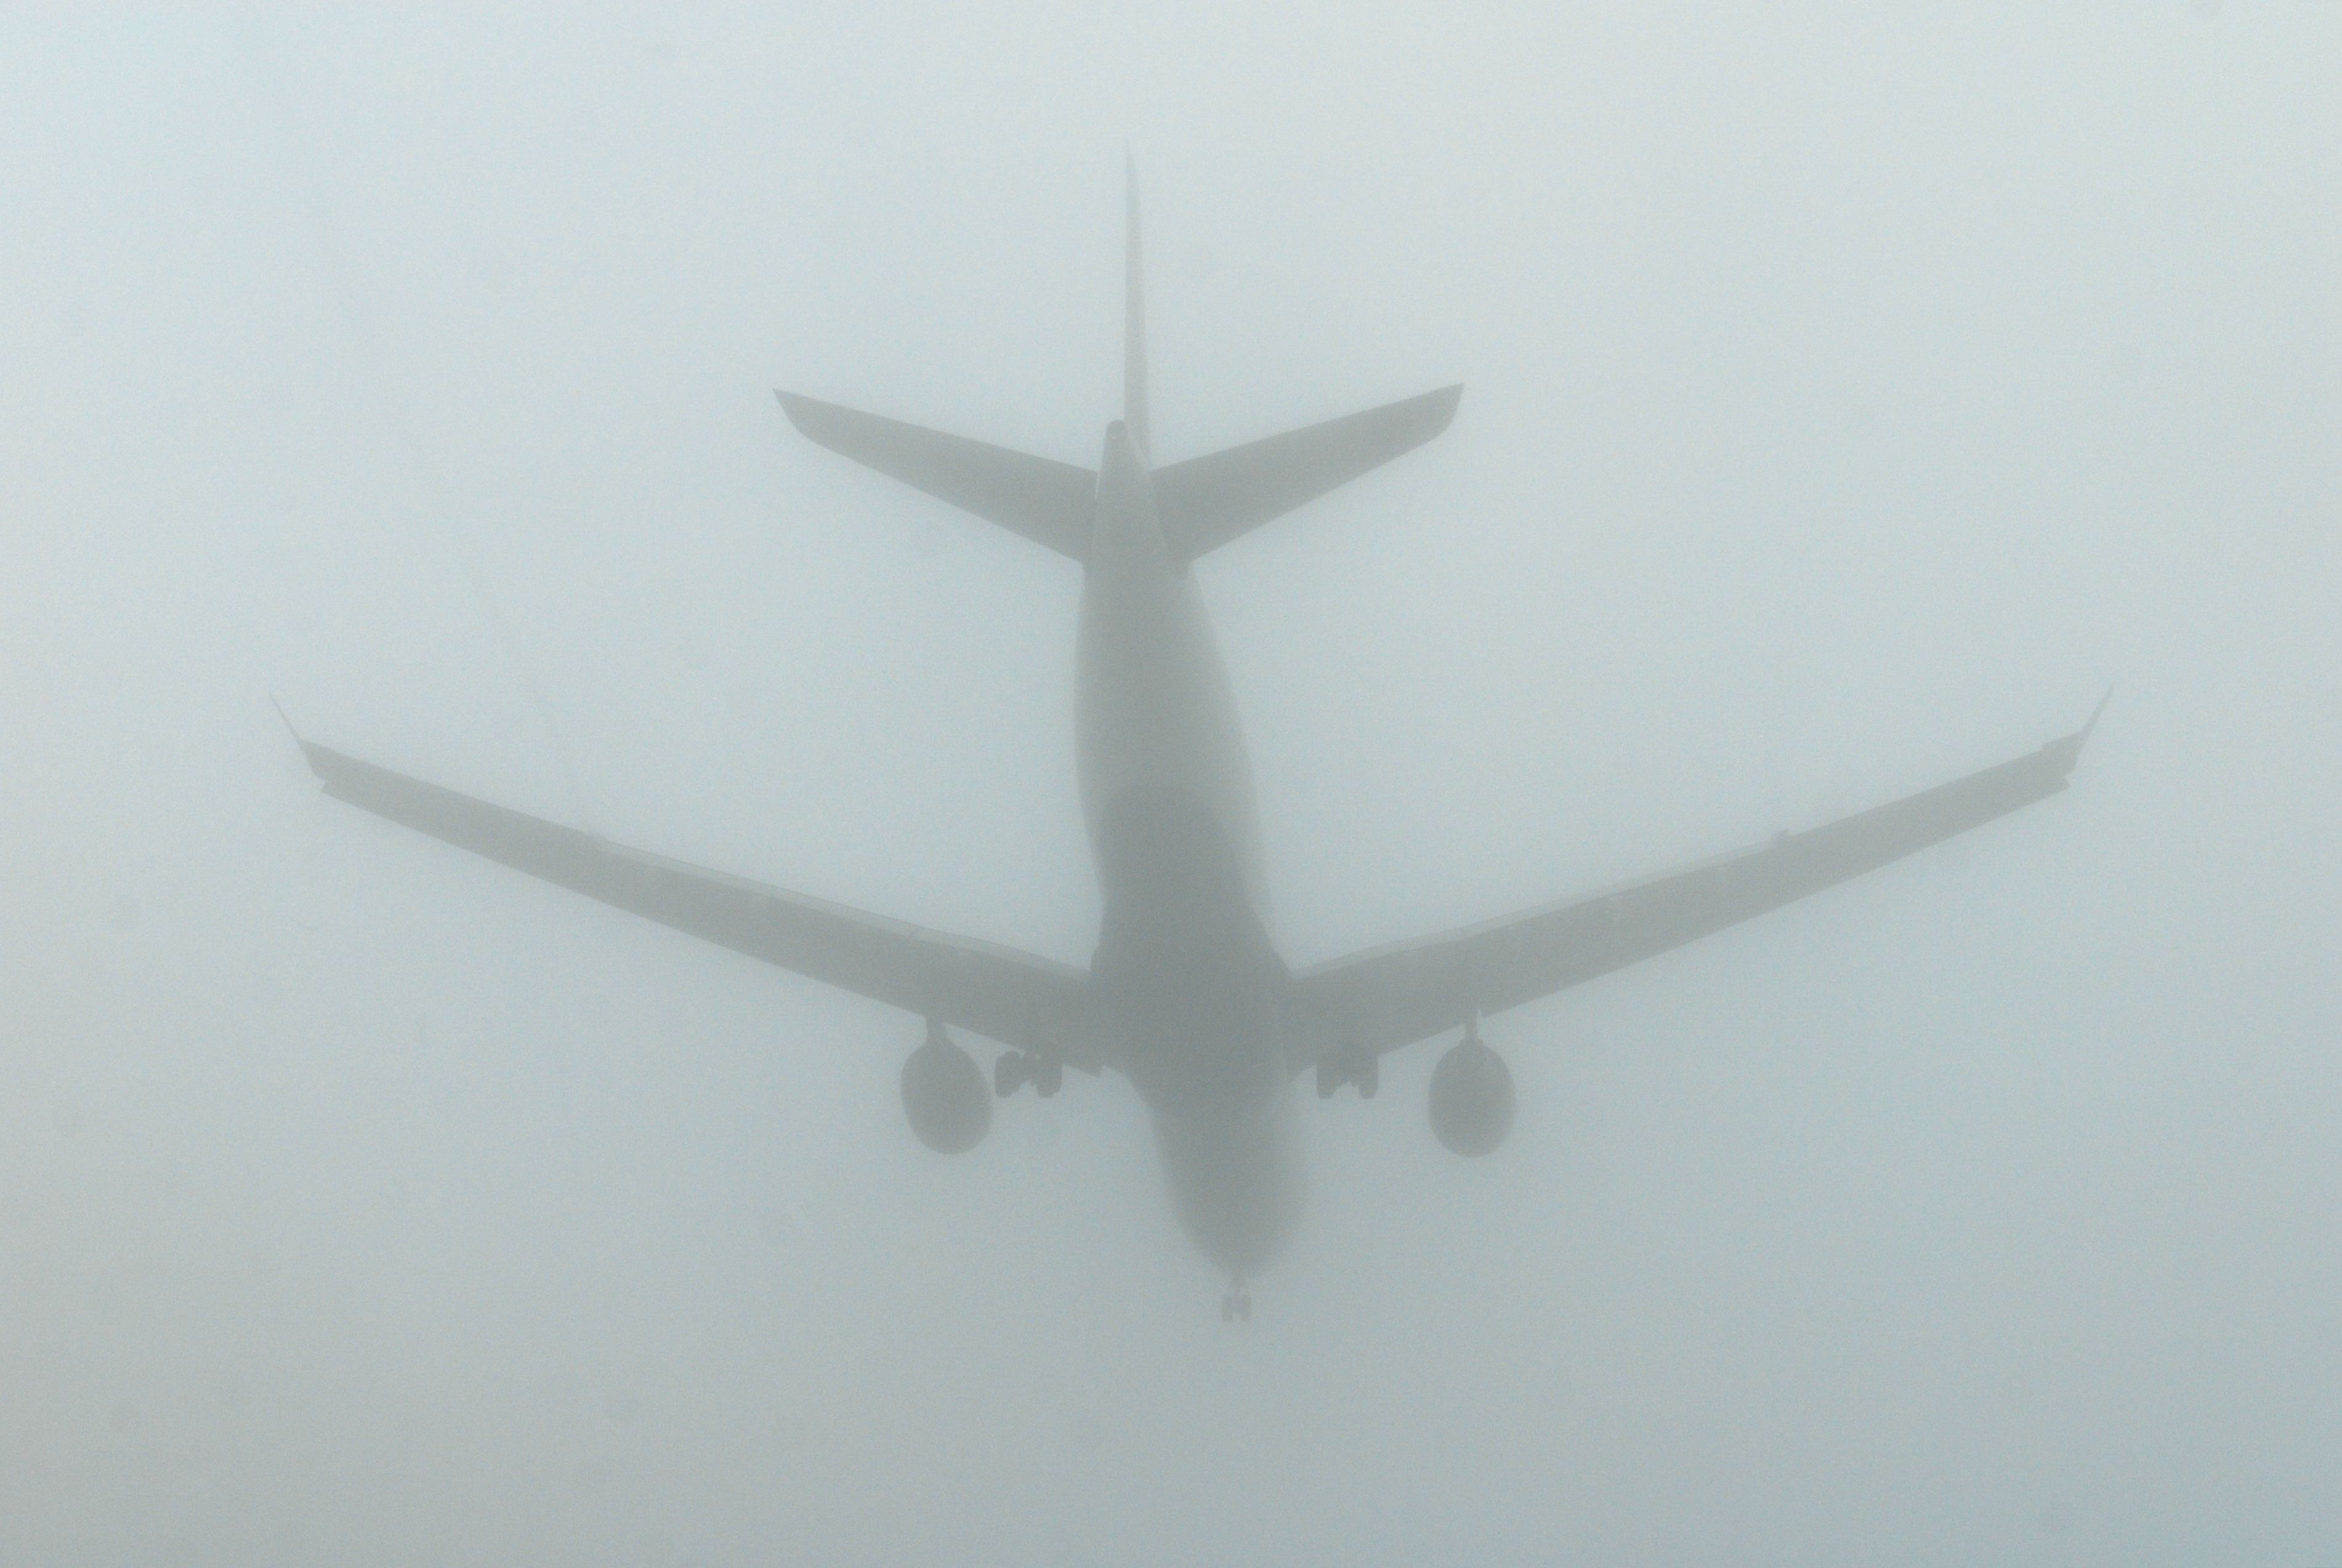 Aircraft Fog Landing